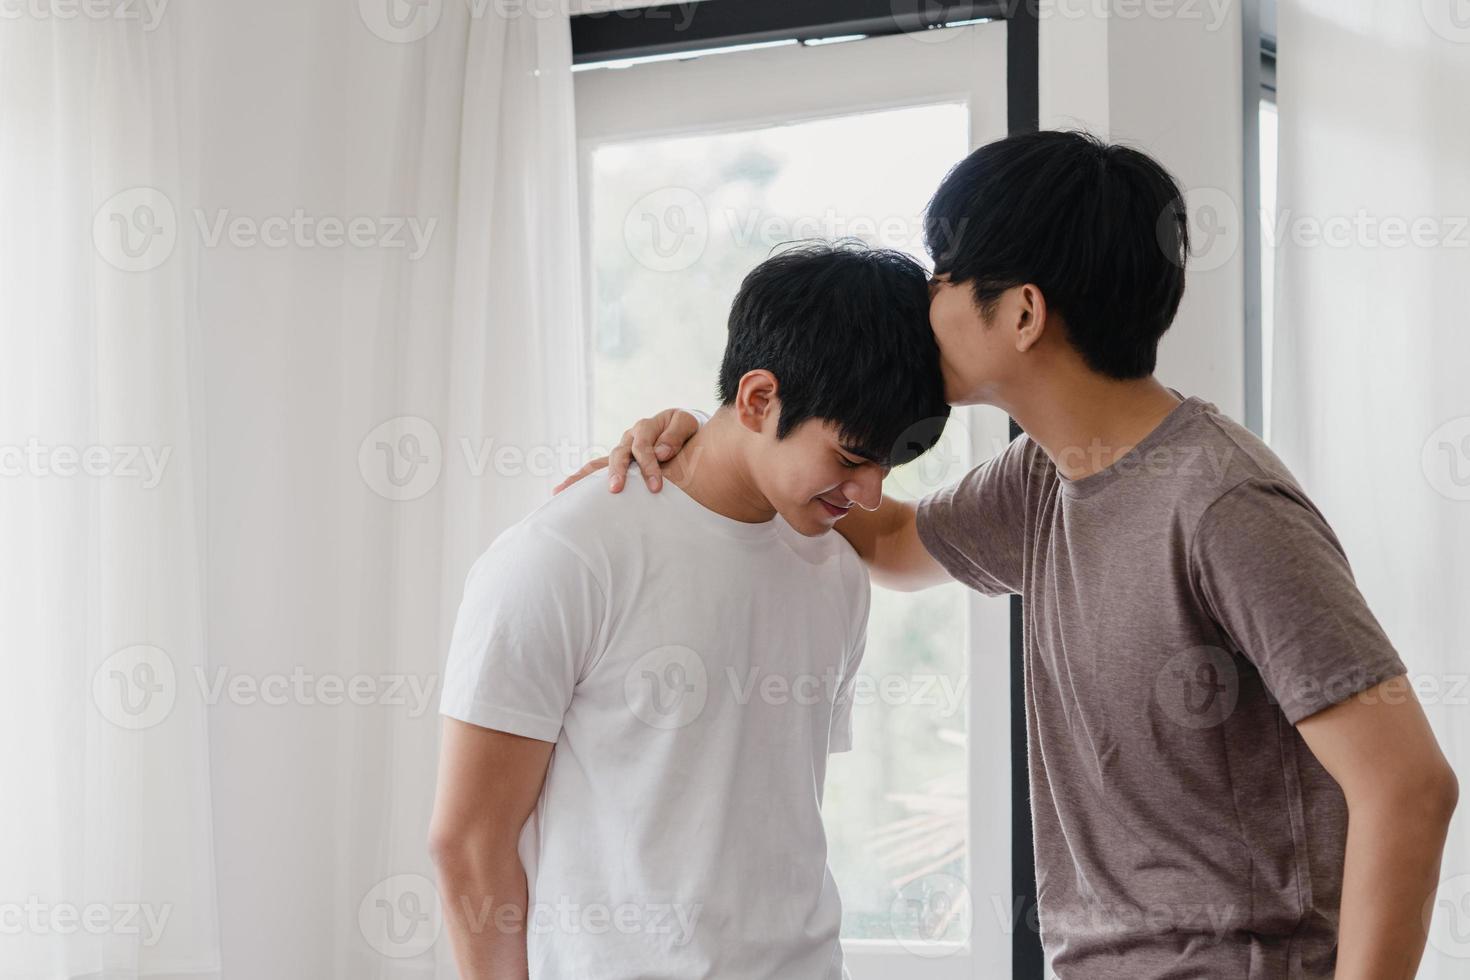 Pareja gay asiática de pie y abrazándose cerca de la ventana en casa. Hombres jóvenes asiáticos lgbtq besándose felices relajarse descansar juntos pasar tiempo romántico en la sala de estar de la casa moderna en el concepto de la mañana. foto